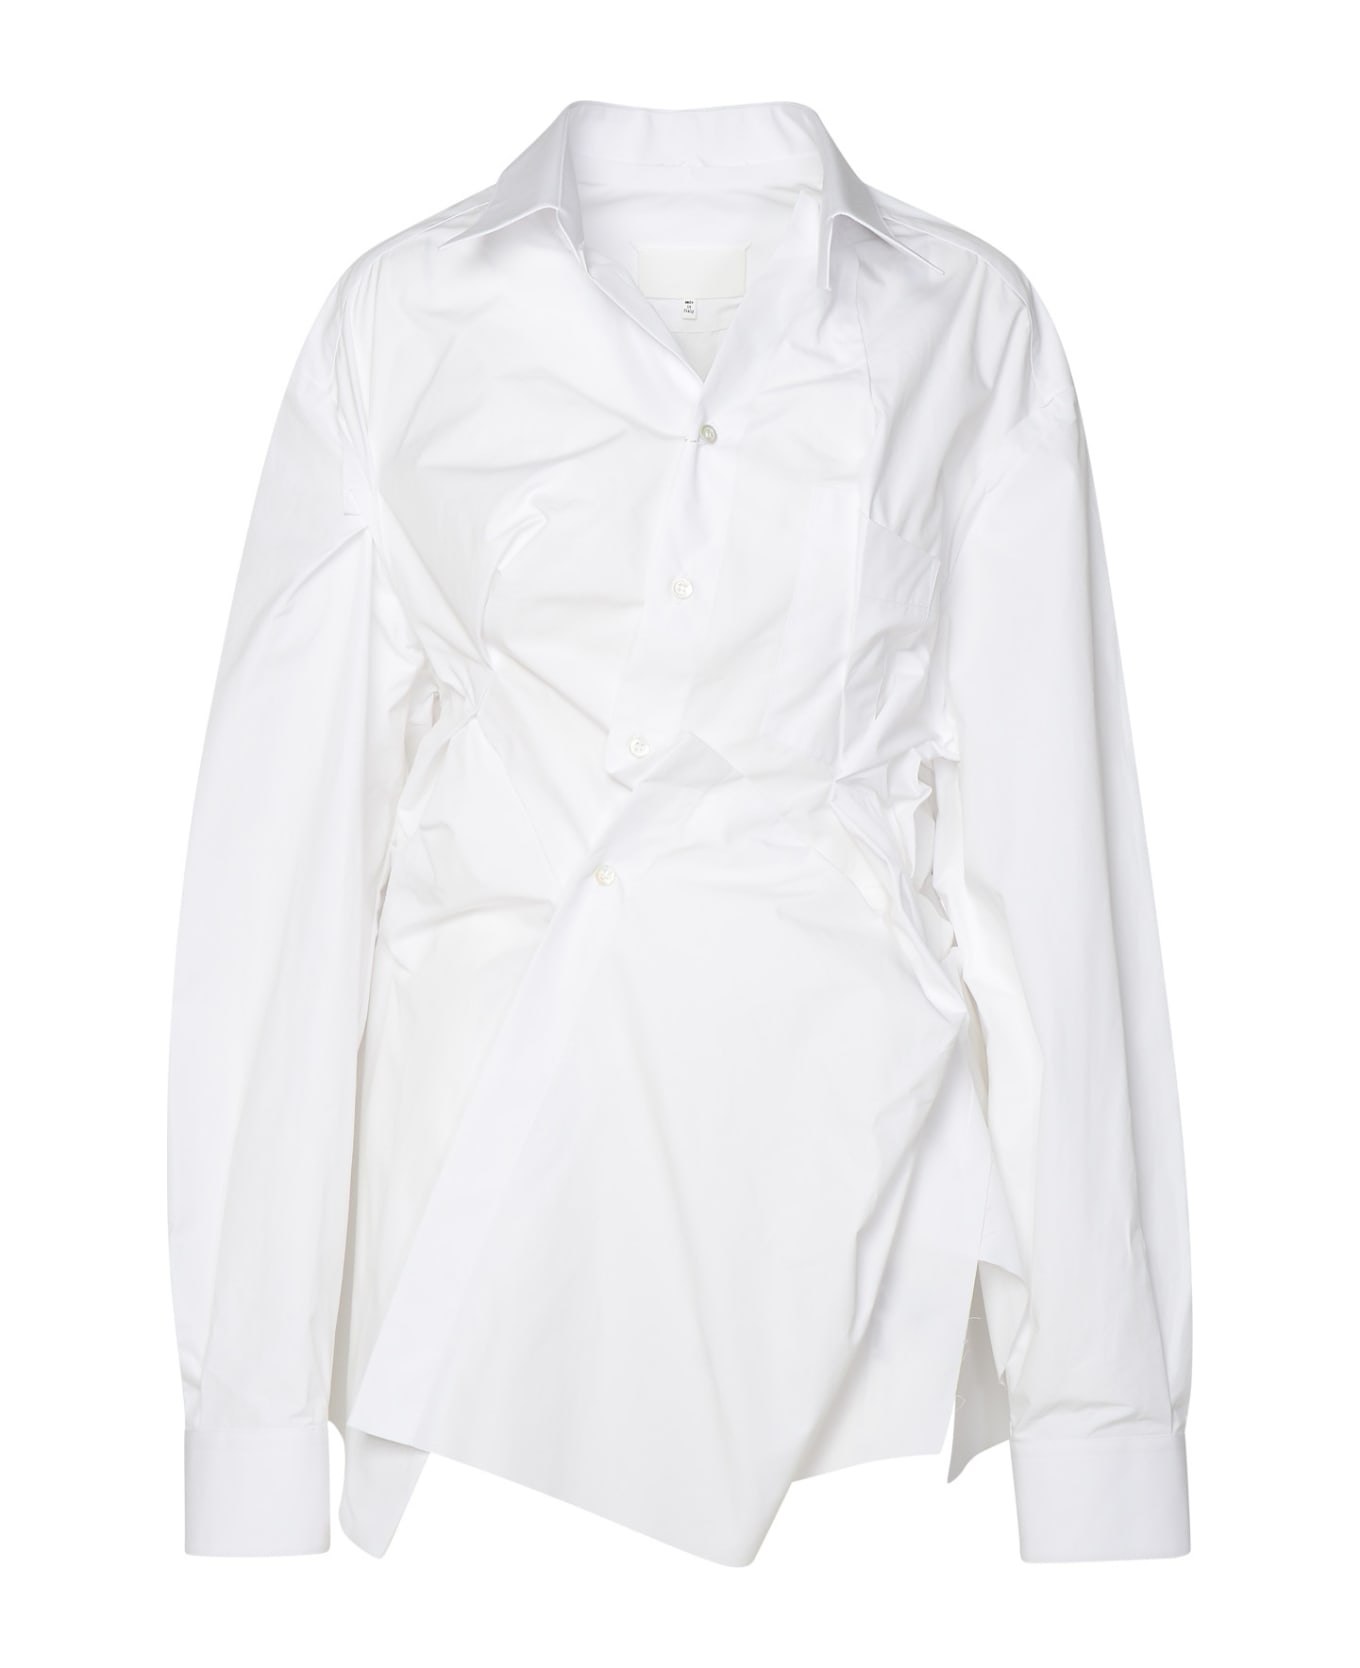 Maison Margiela White Cotton Shirt - white ブラウス